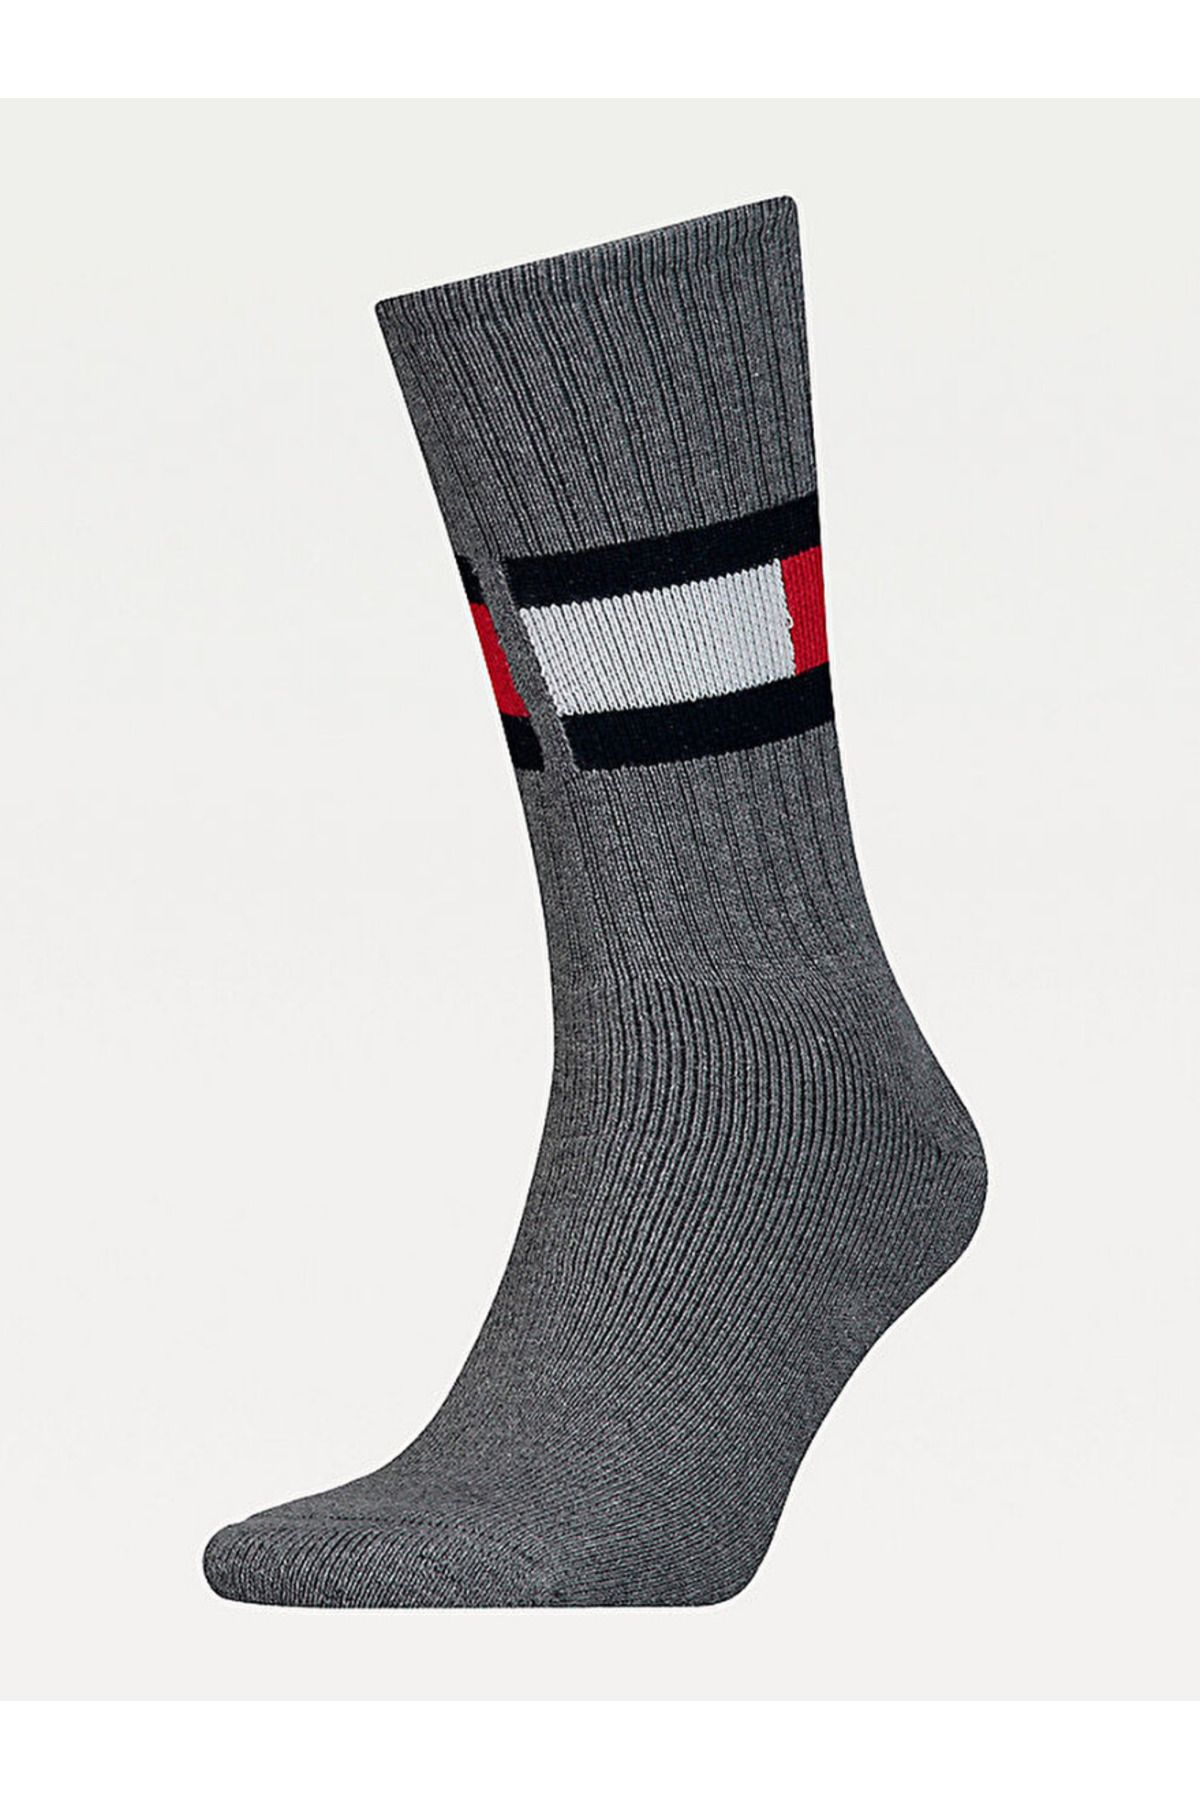 Tommy Hilfiger Dual Gender Flag Socks